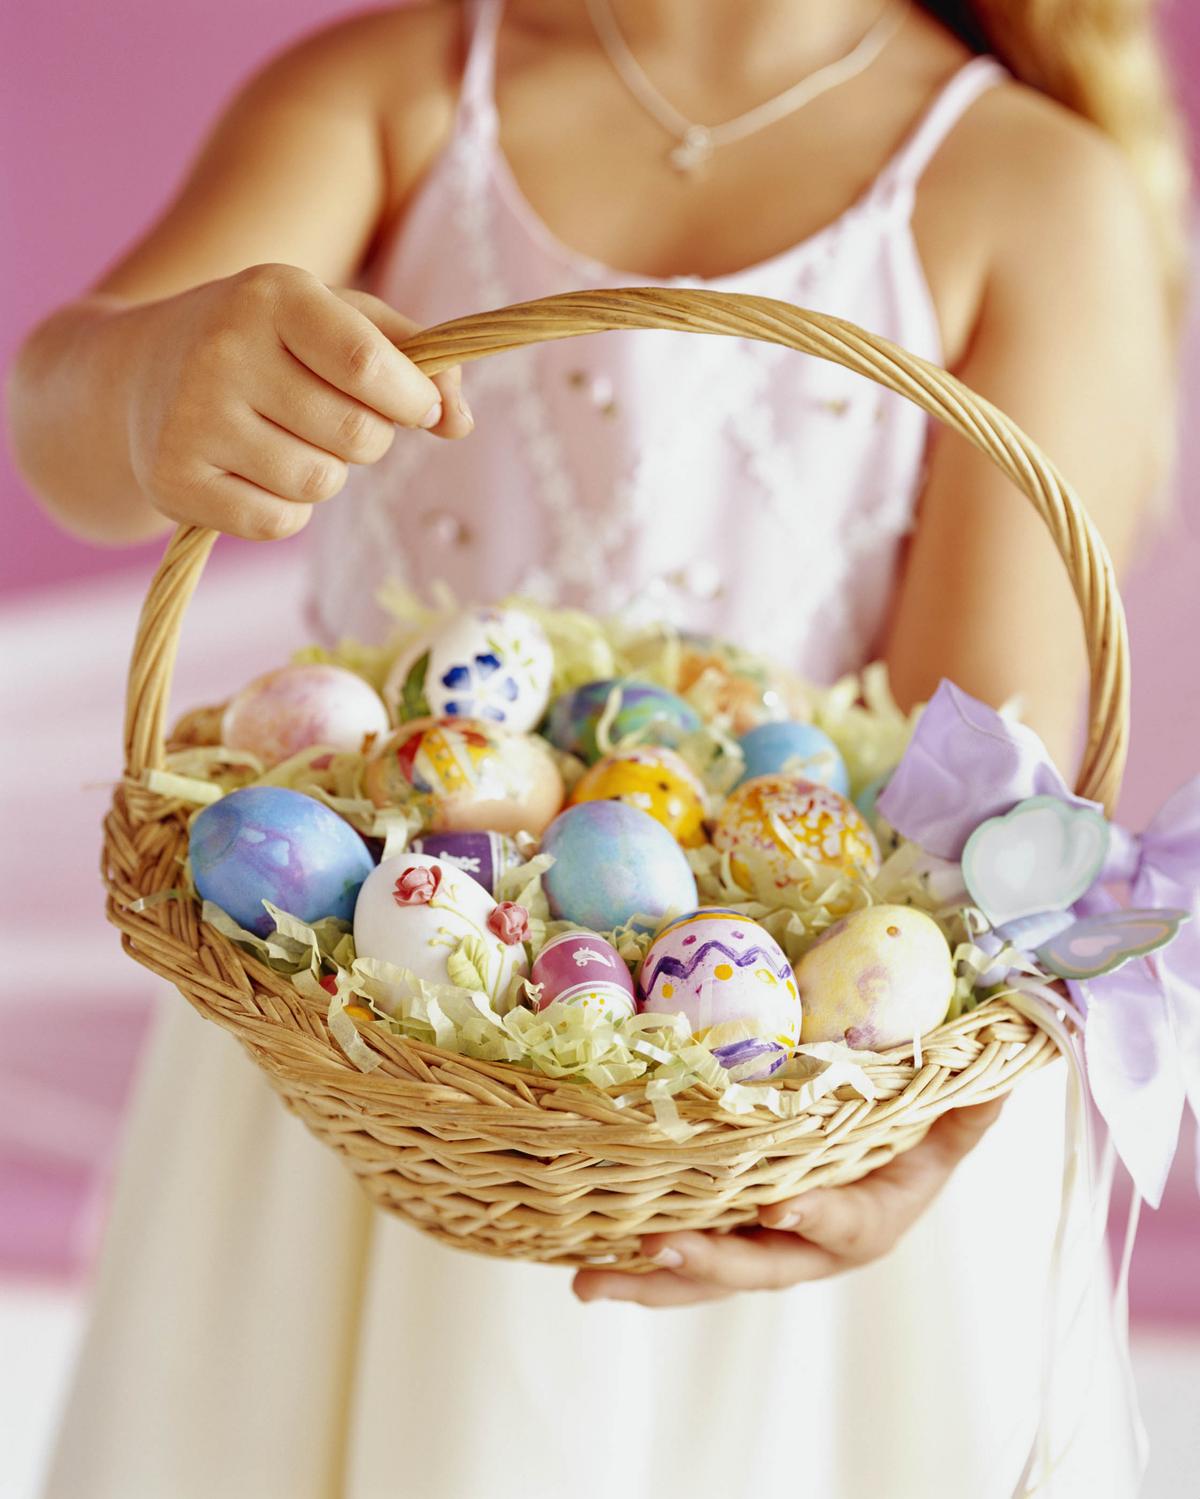 Így ünneplik a húsvétot a világ különböző országaiban - Blikk Rúzs